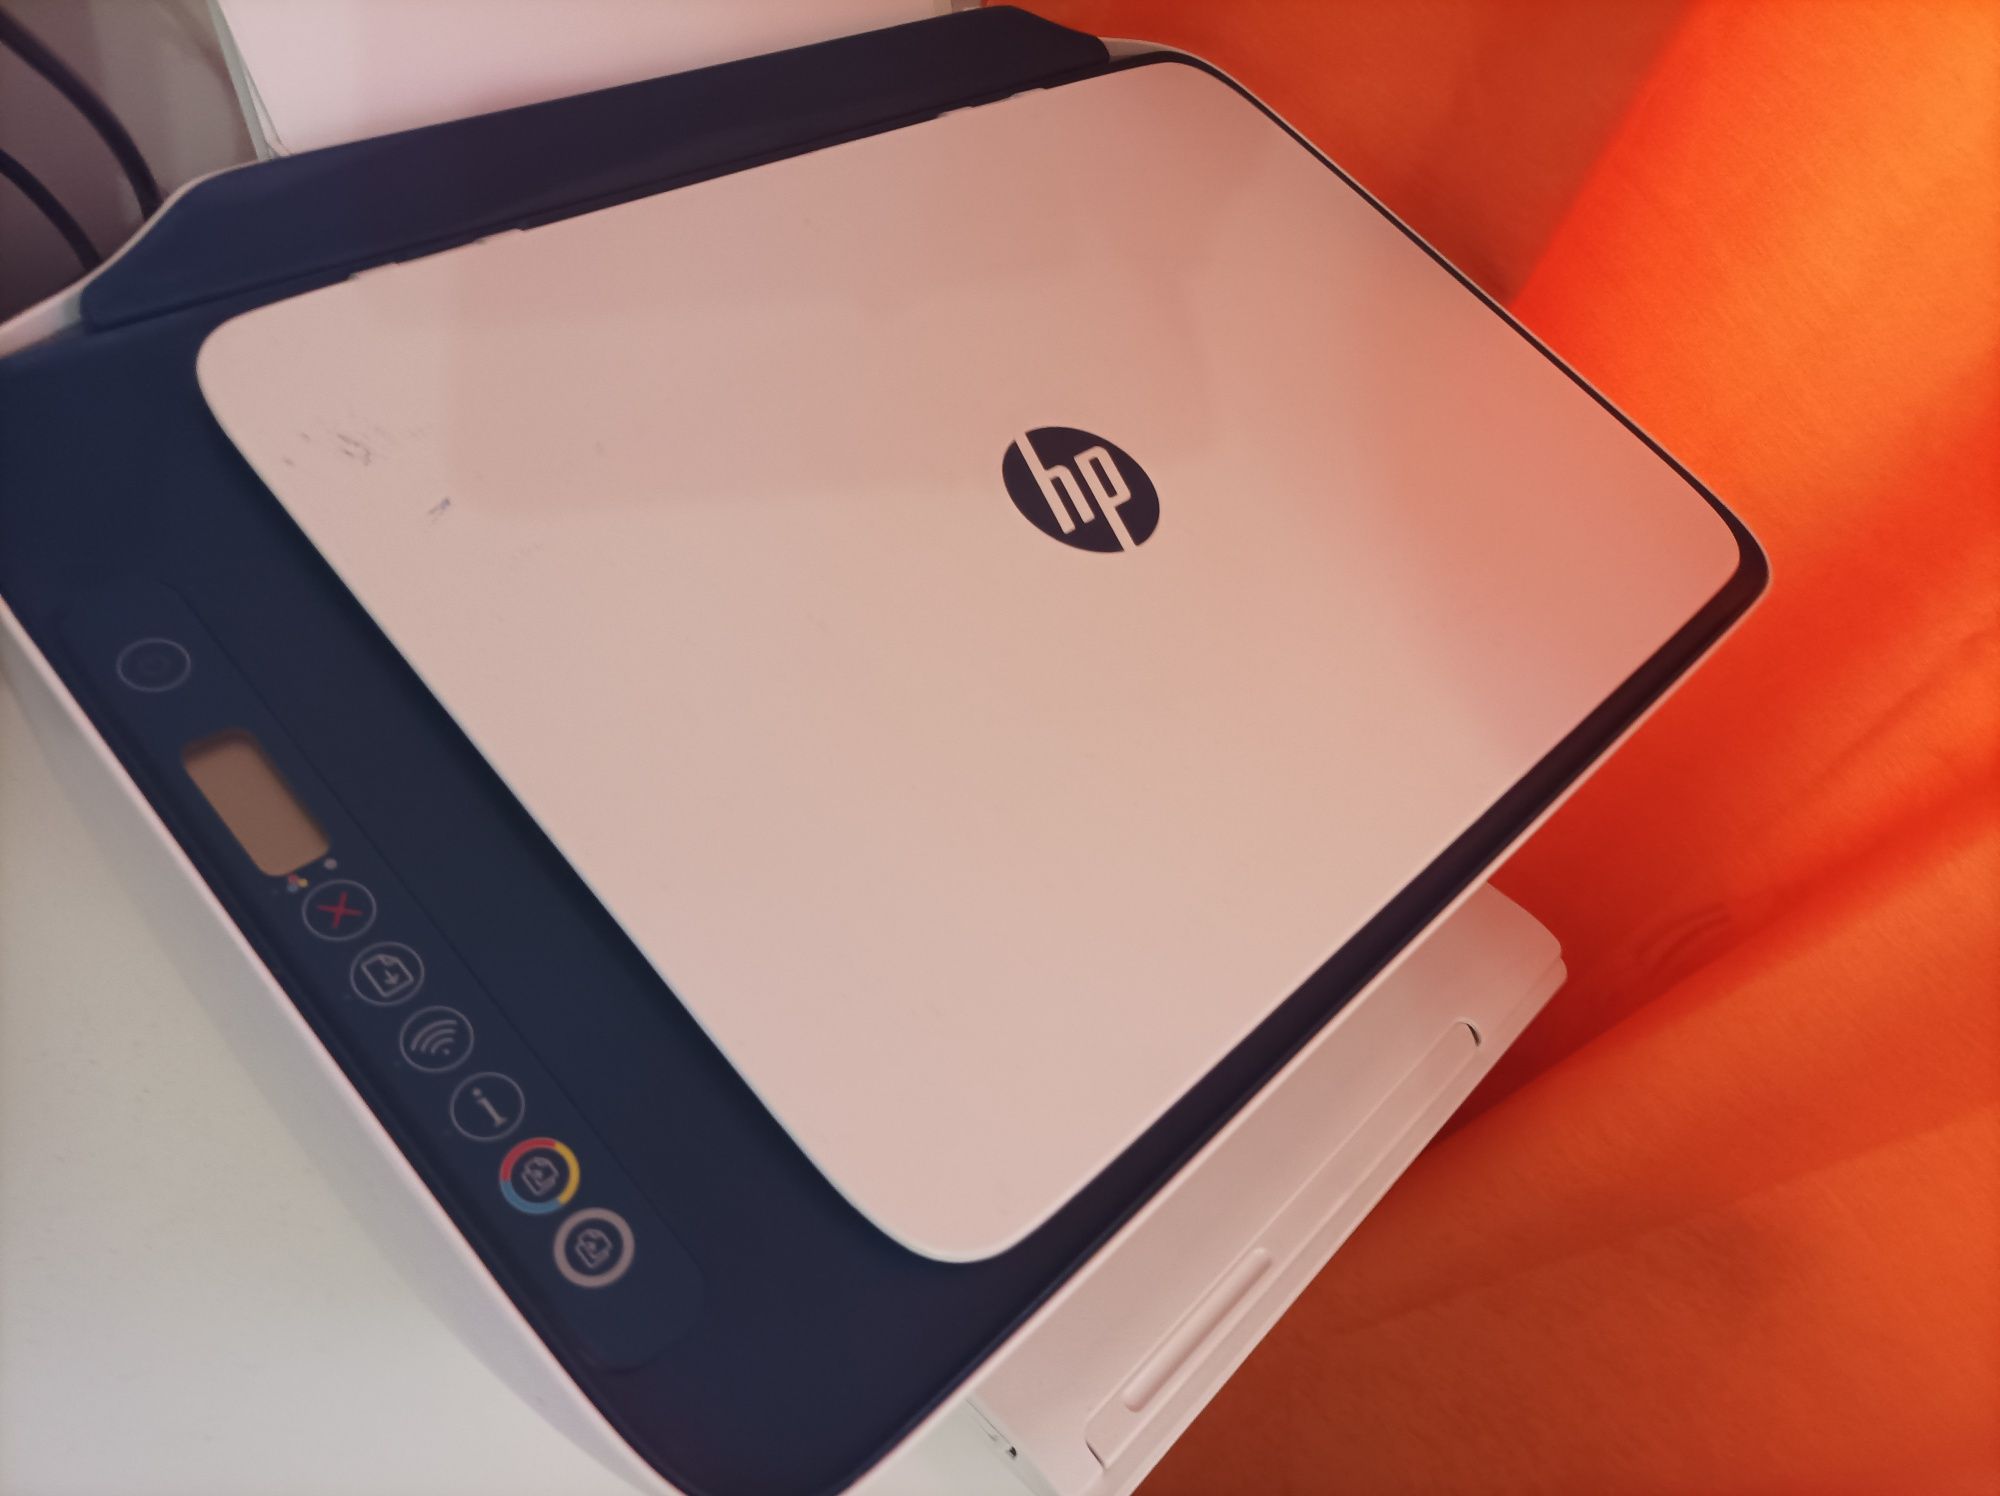 Imprimantă HP multifuncțională trimit colet